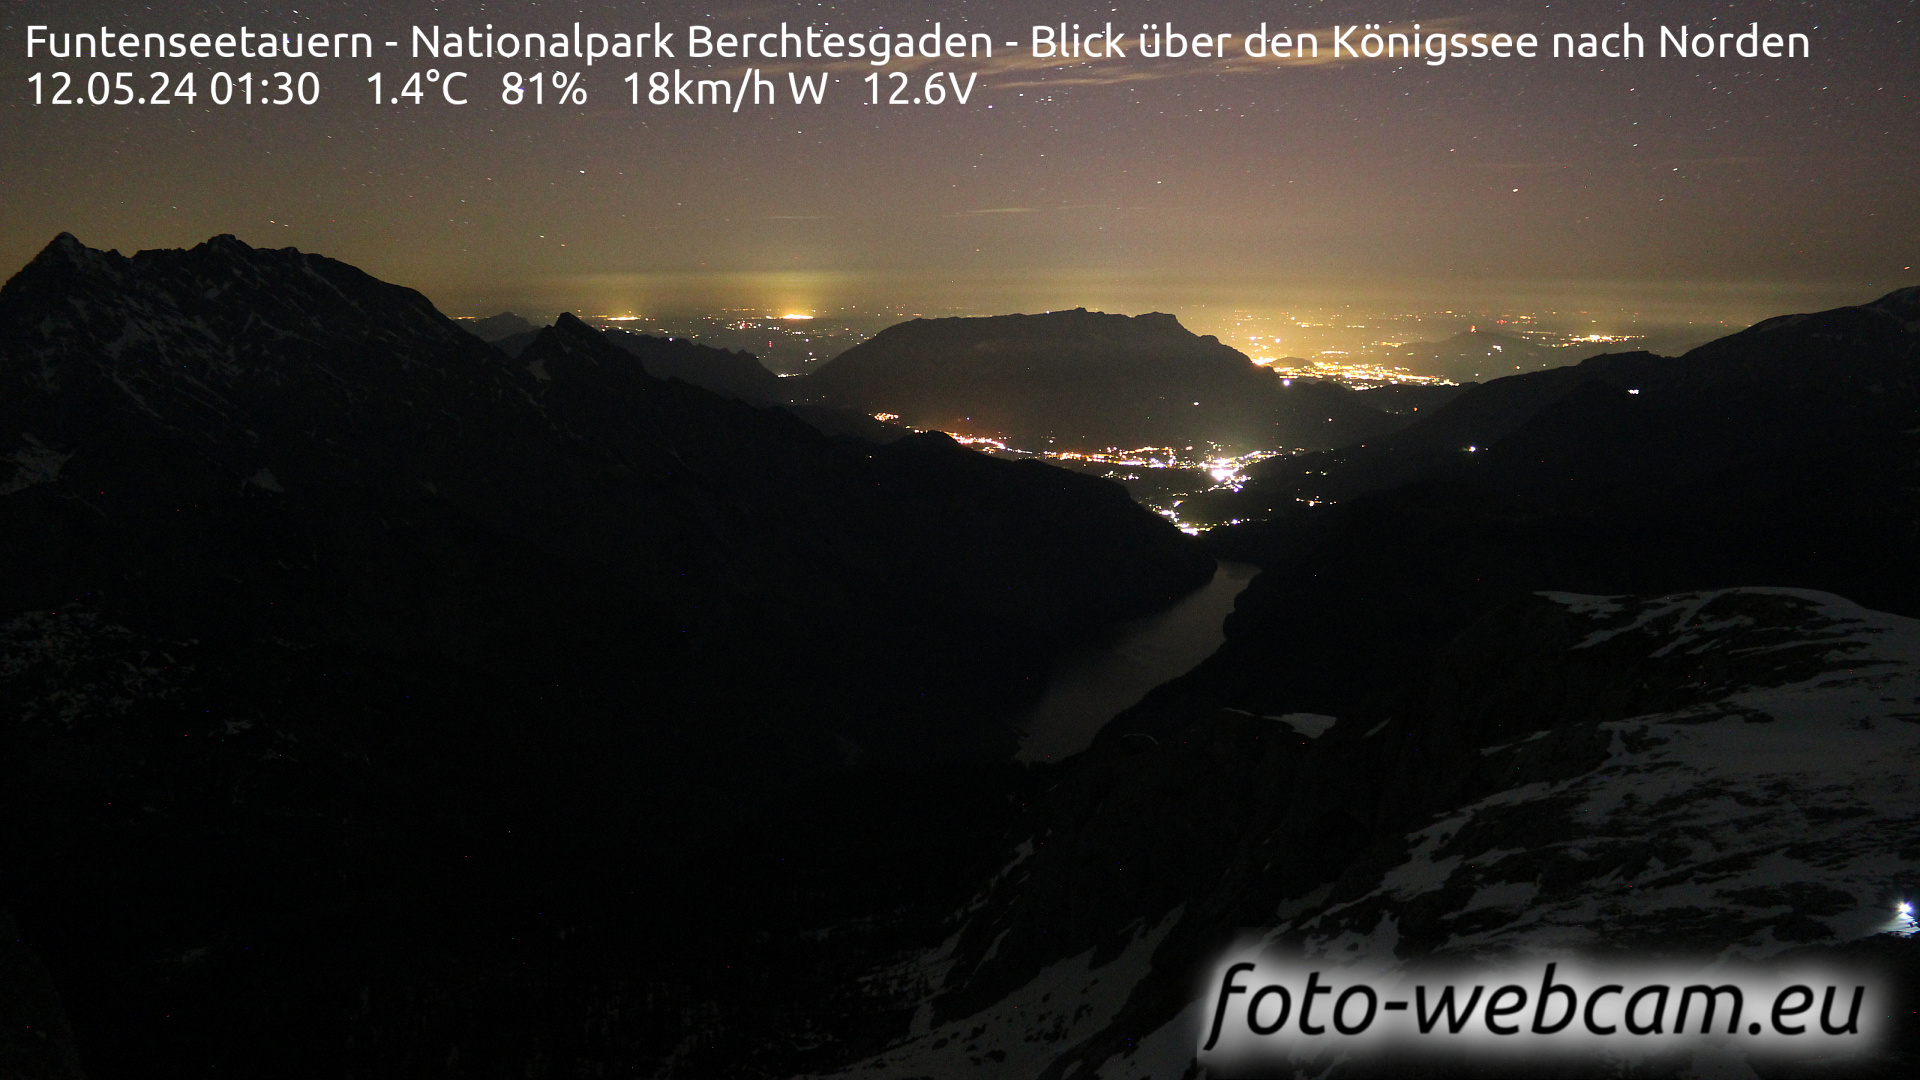 Berchtesgaden Tor. 01:48